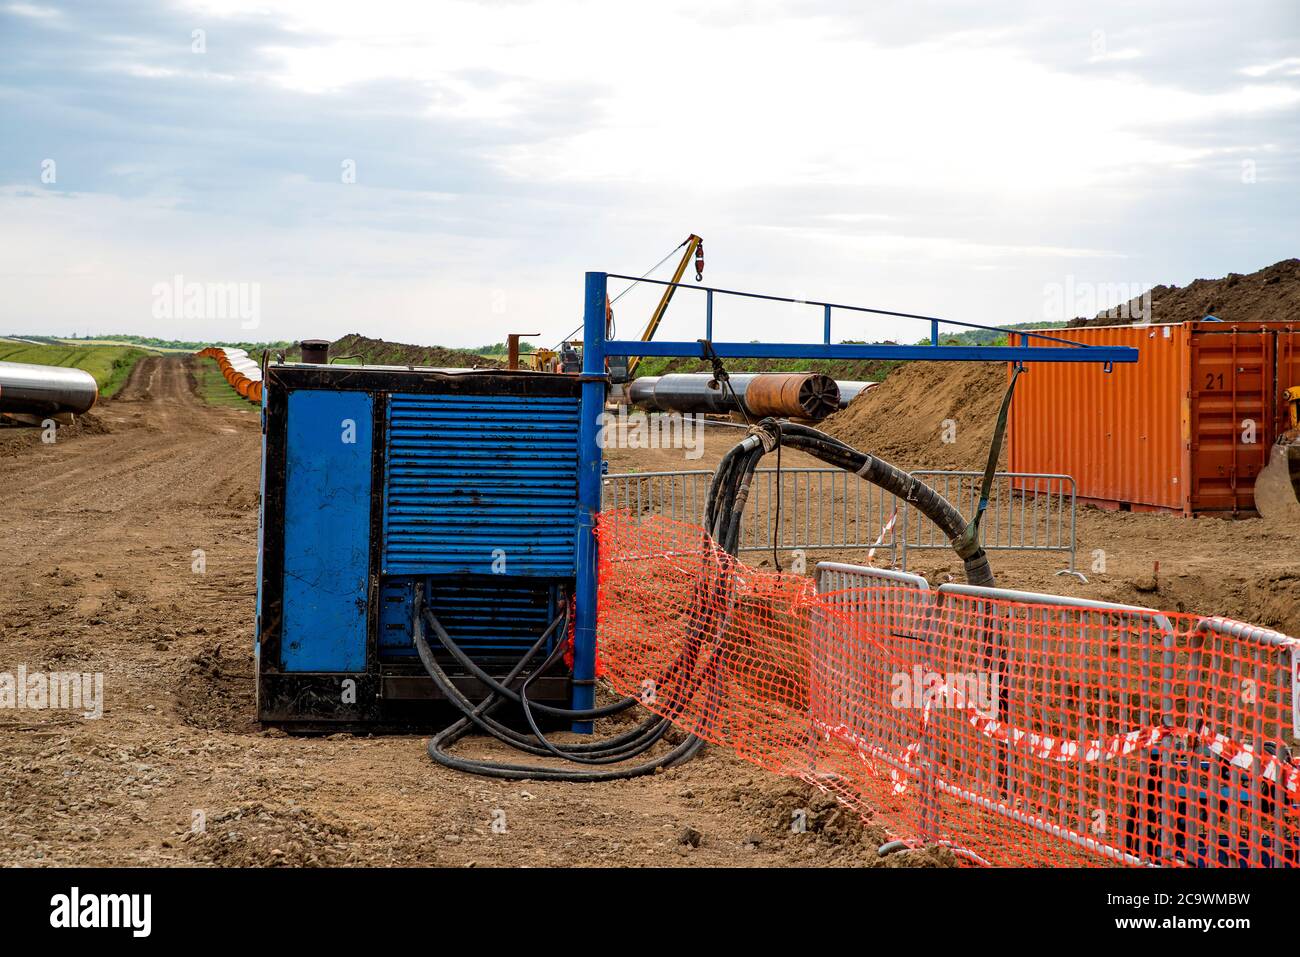 Hydraulikaggregat für Bauarbeiten an Gasfernleitung in Bulgarien. Stockfoto